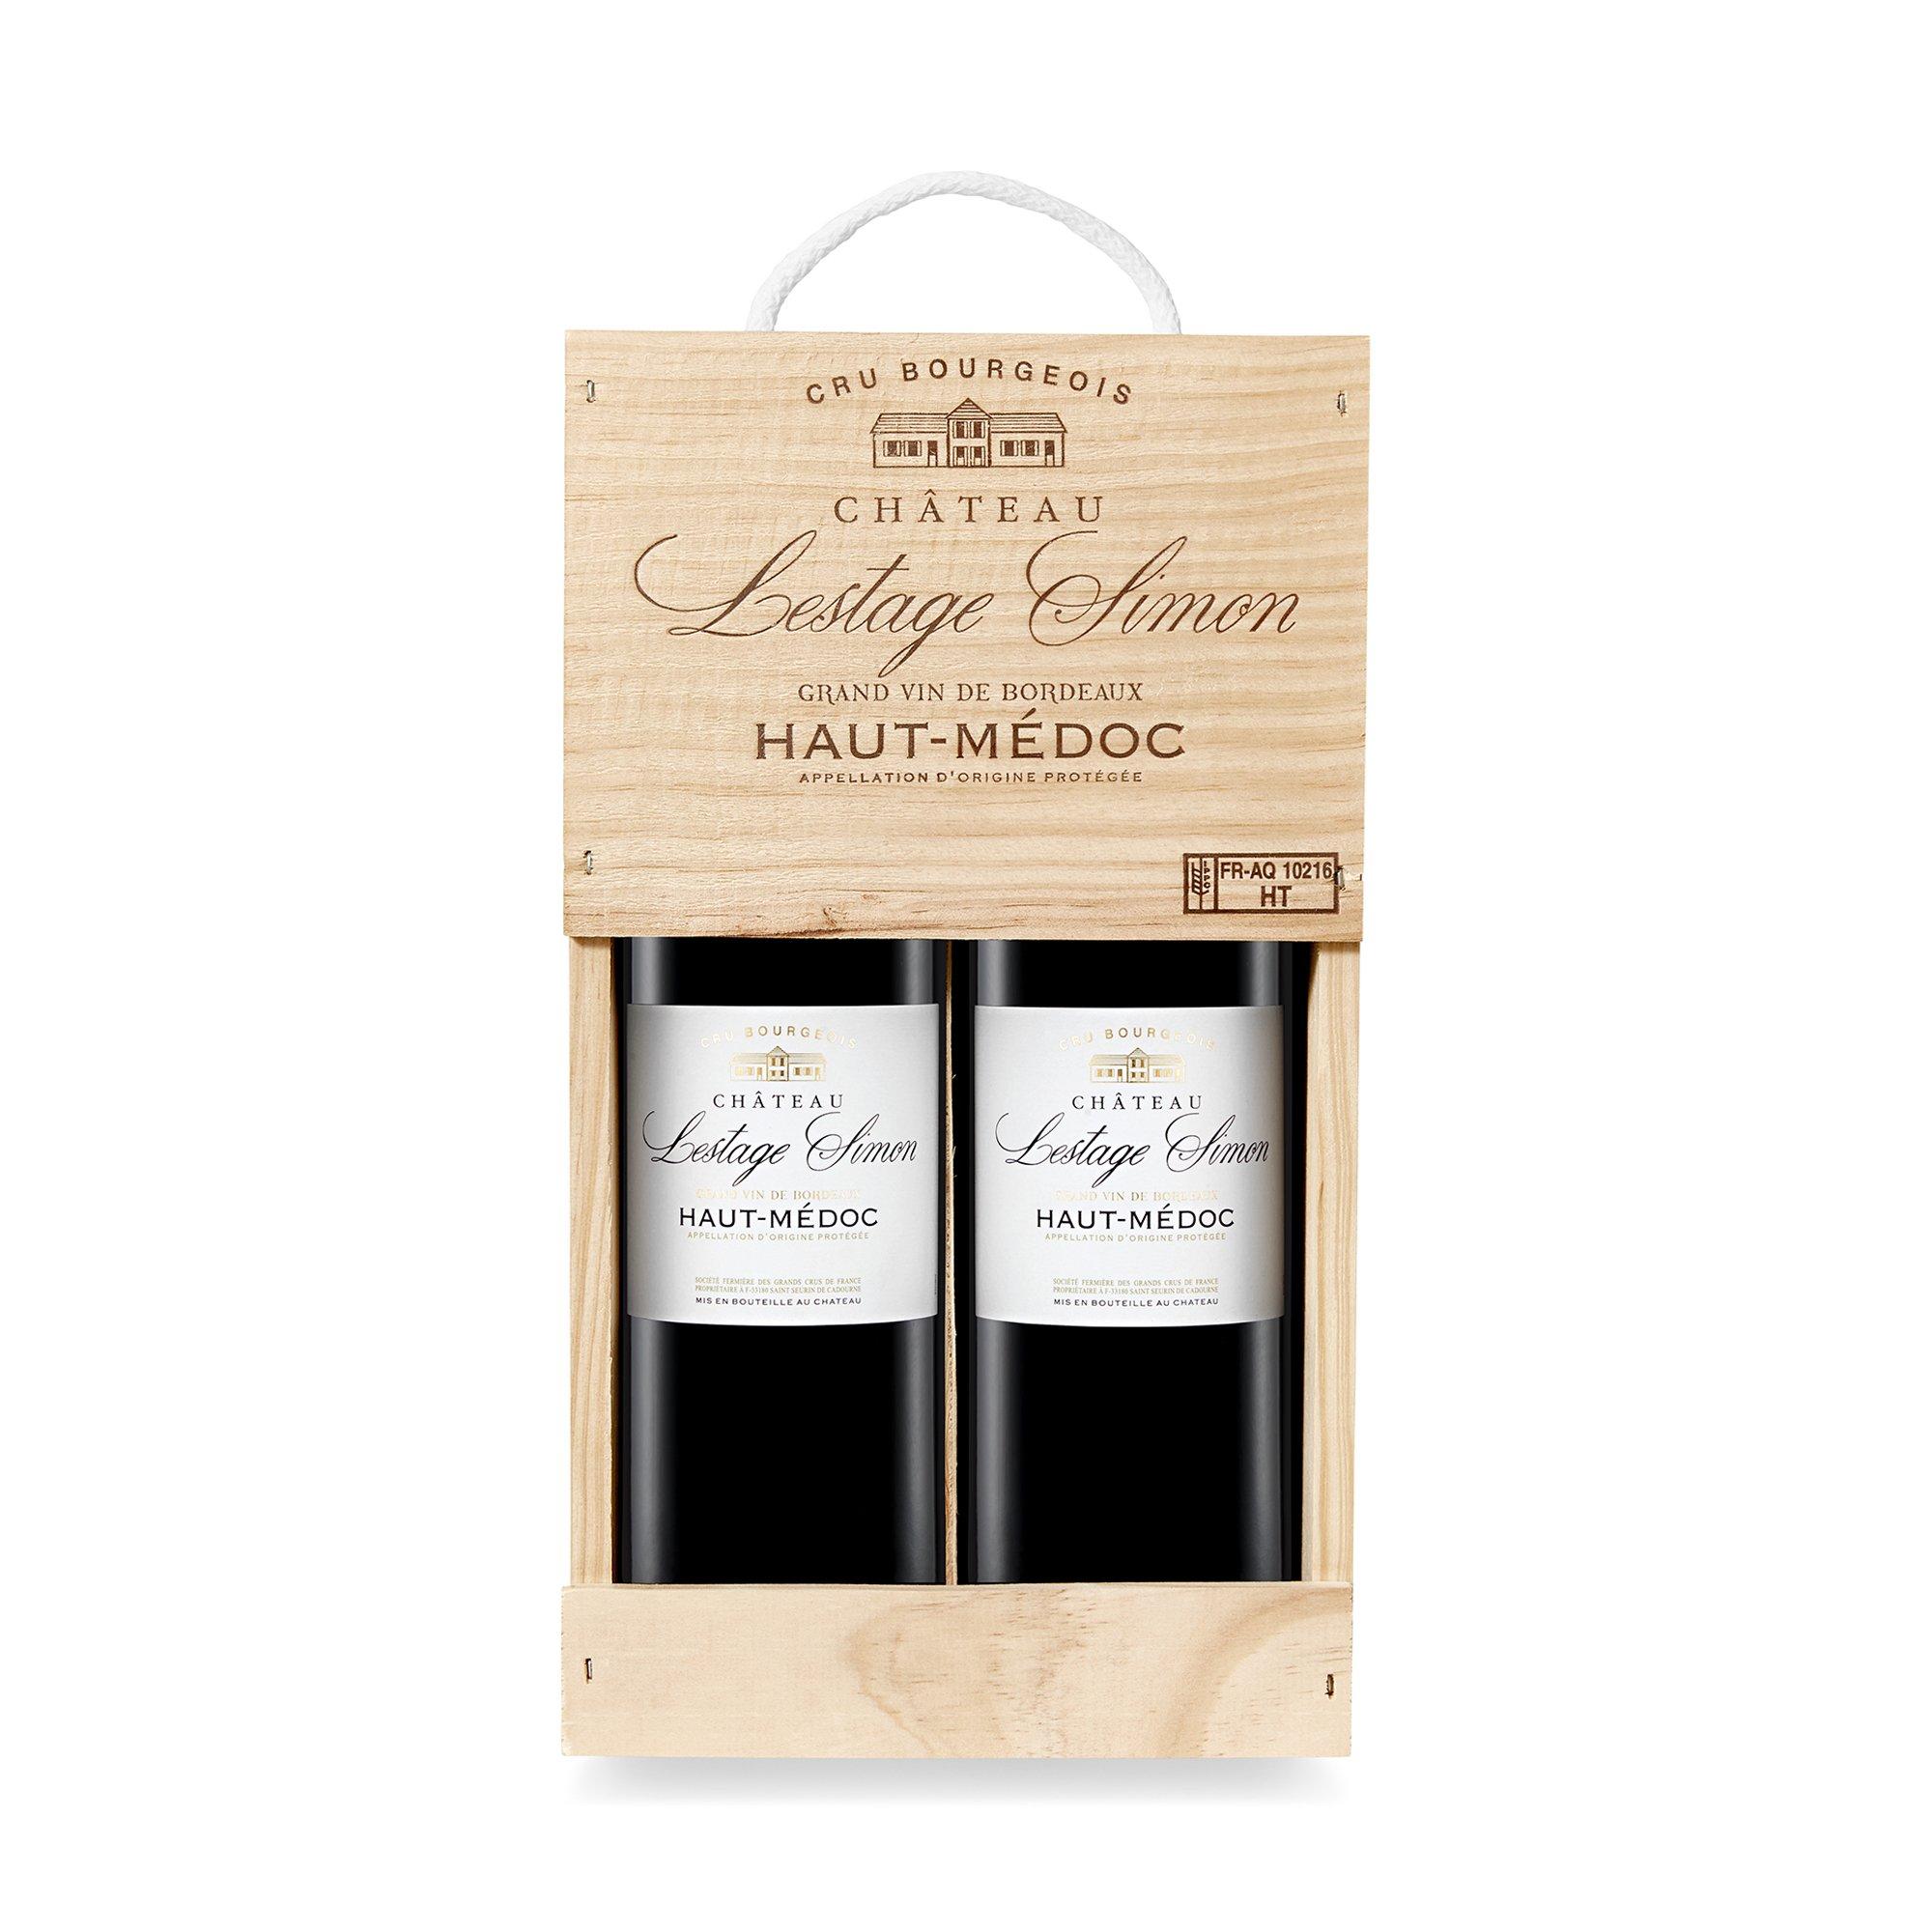 Image of Château Lestage Simon 2014, Grand Vin de Bordeaux Holzkiste, Haut-Médoc AOC - 150 cl